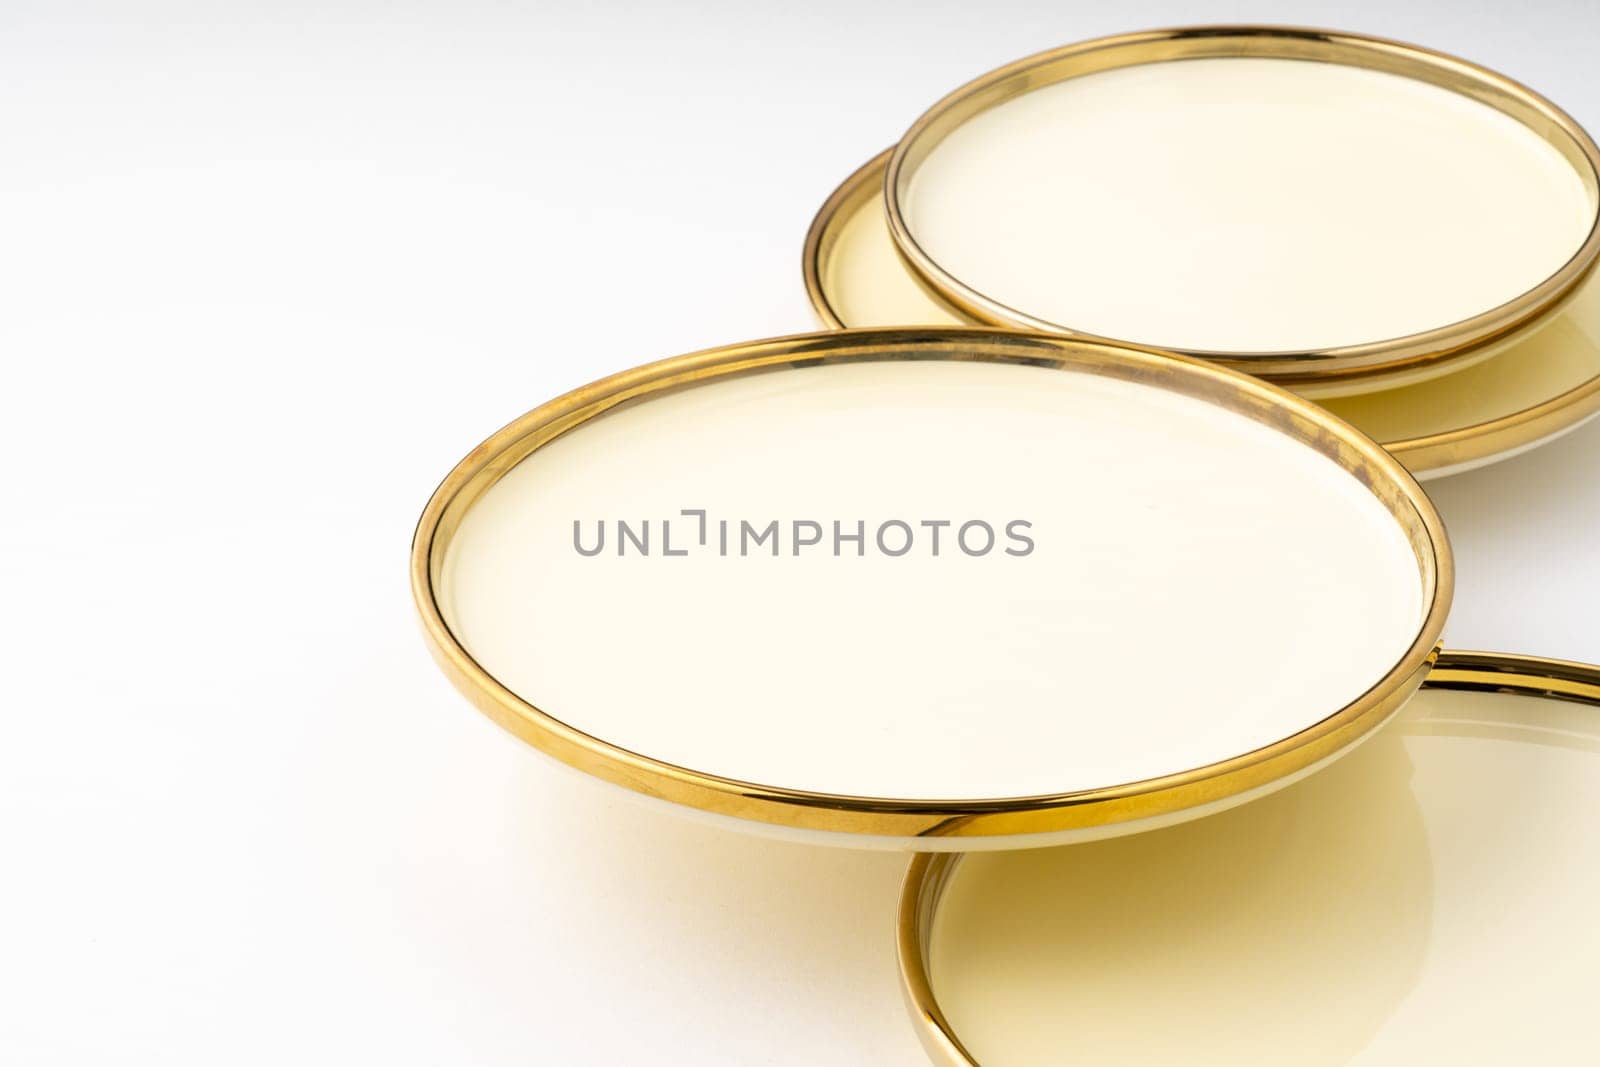 A golden luxury ceramic kitchen utensils on a white background by A_Karim